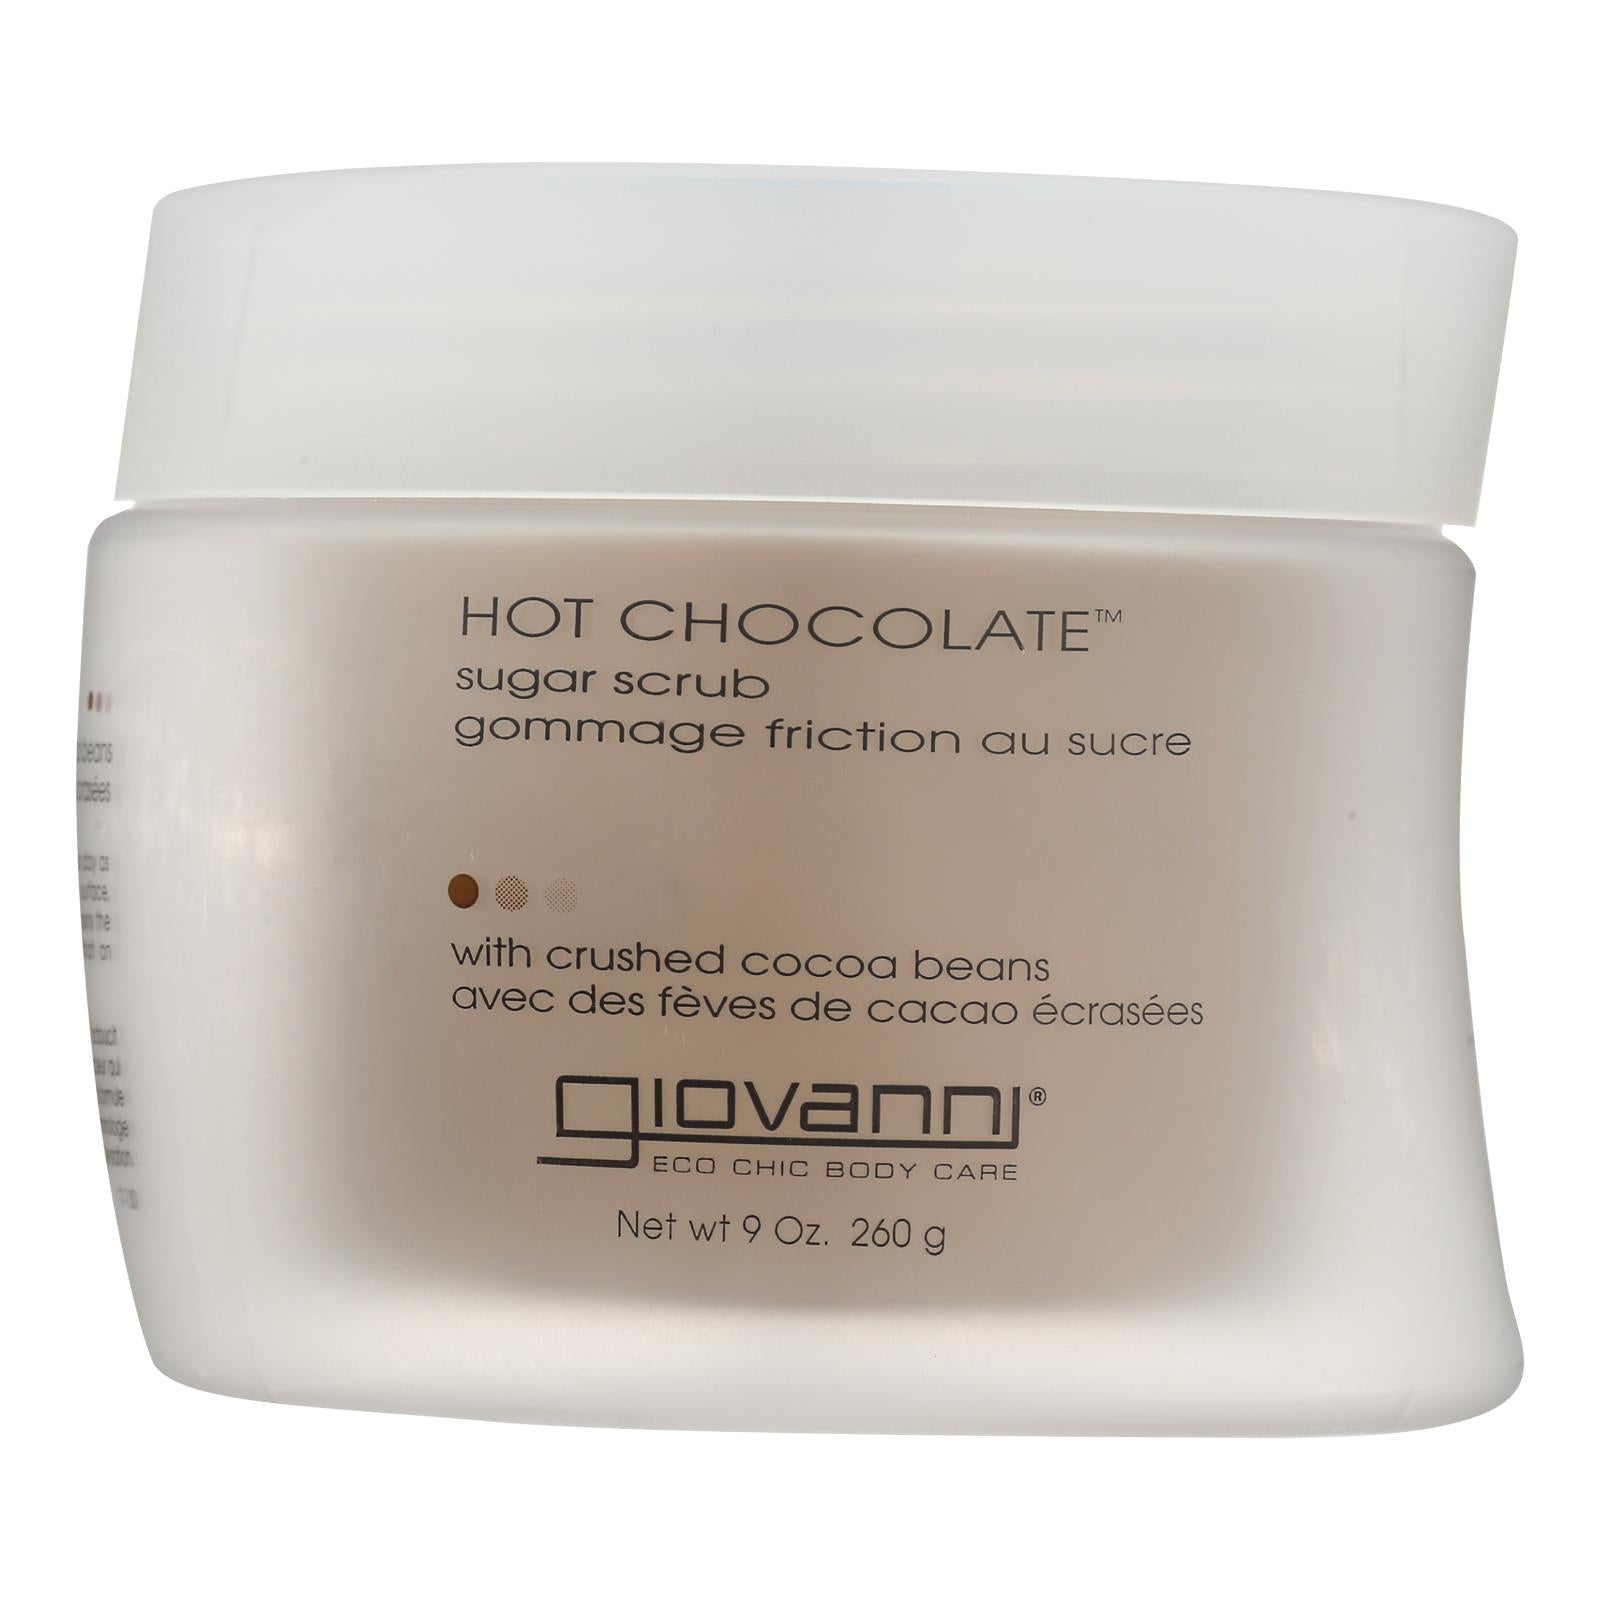 Giovanni Sugar Scrub Hot Chocolate - 9 Oz